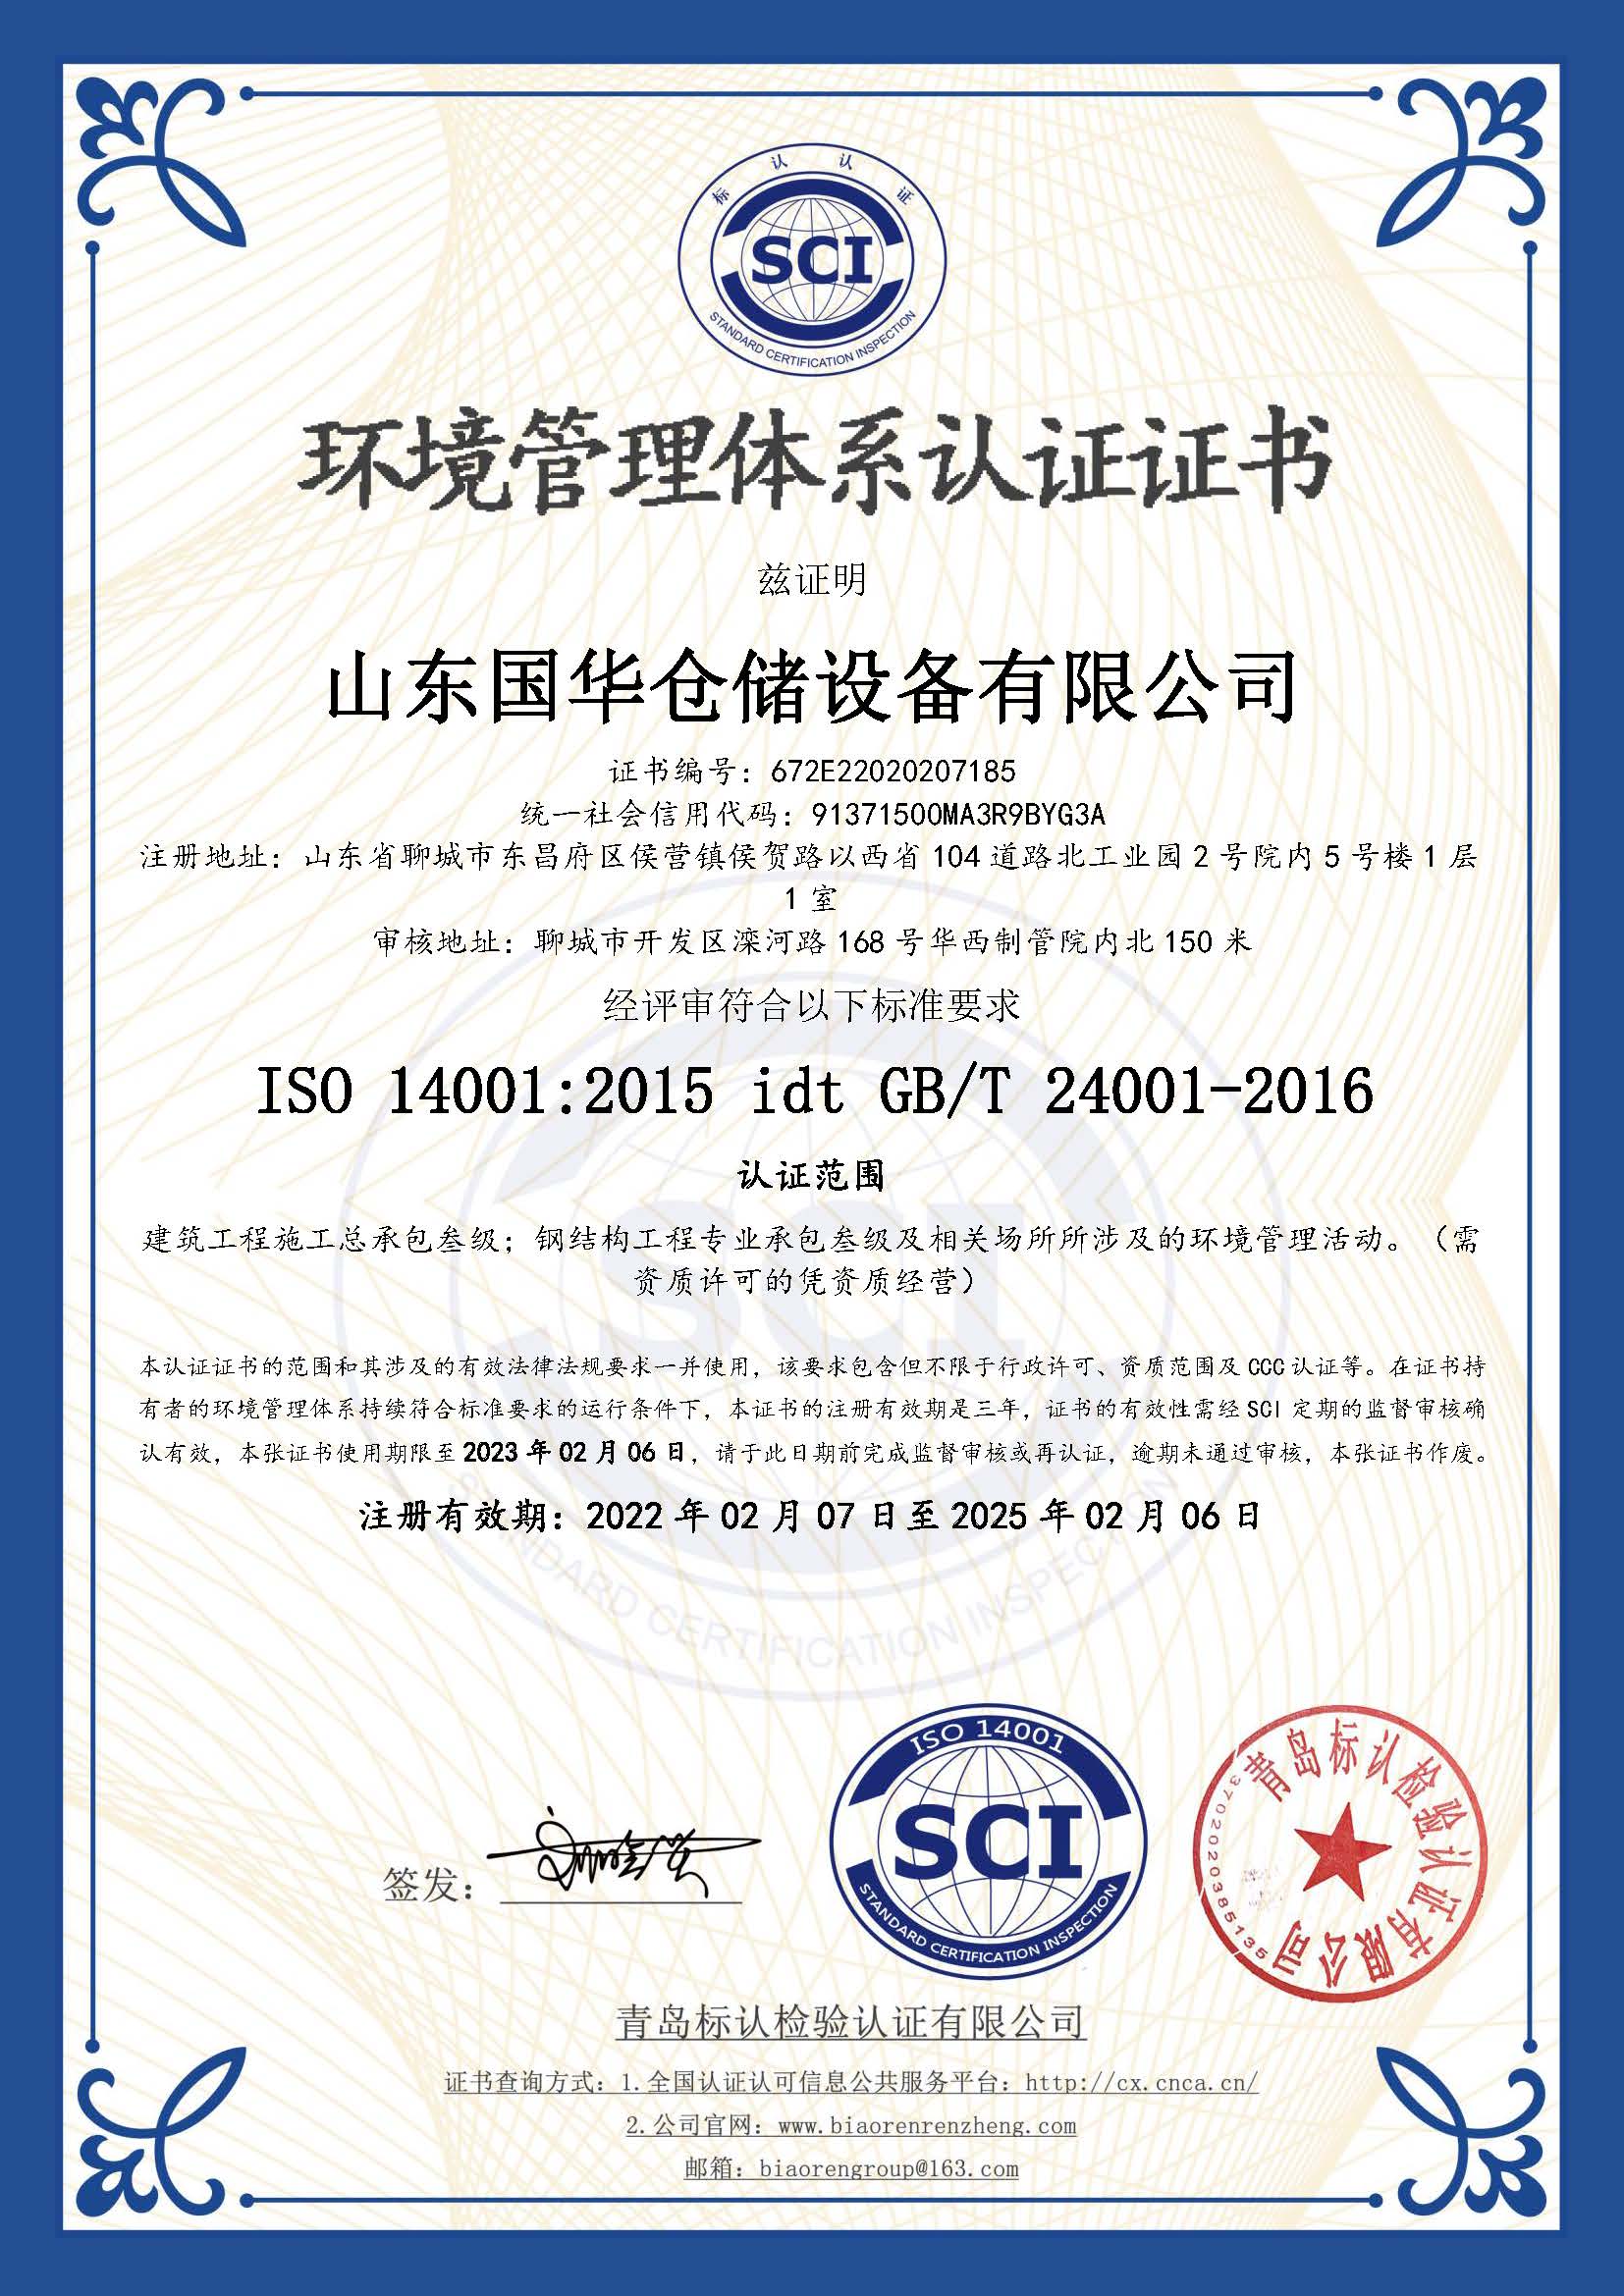 塔城钢板仓环境管理体系认证证书